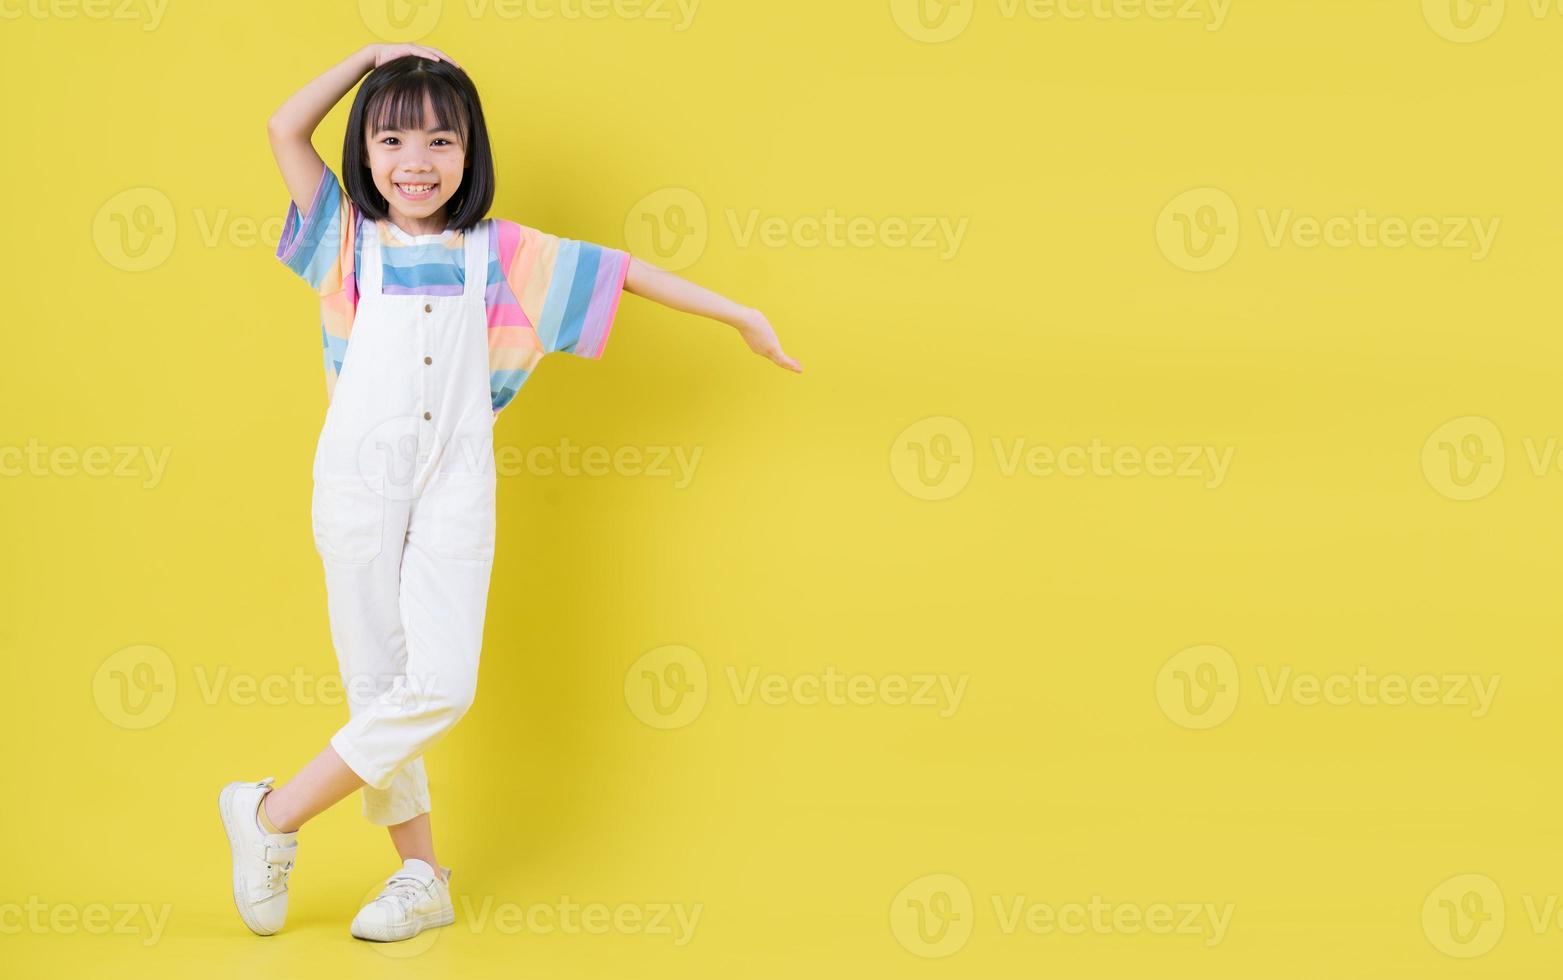 imagen completa de un niño asiático posando sobre fondo amarillo foto